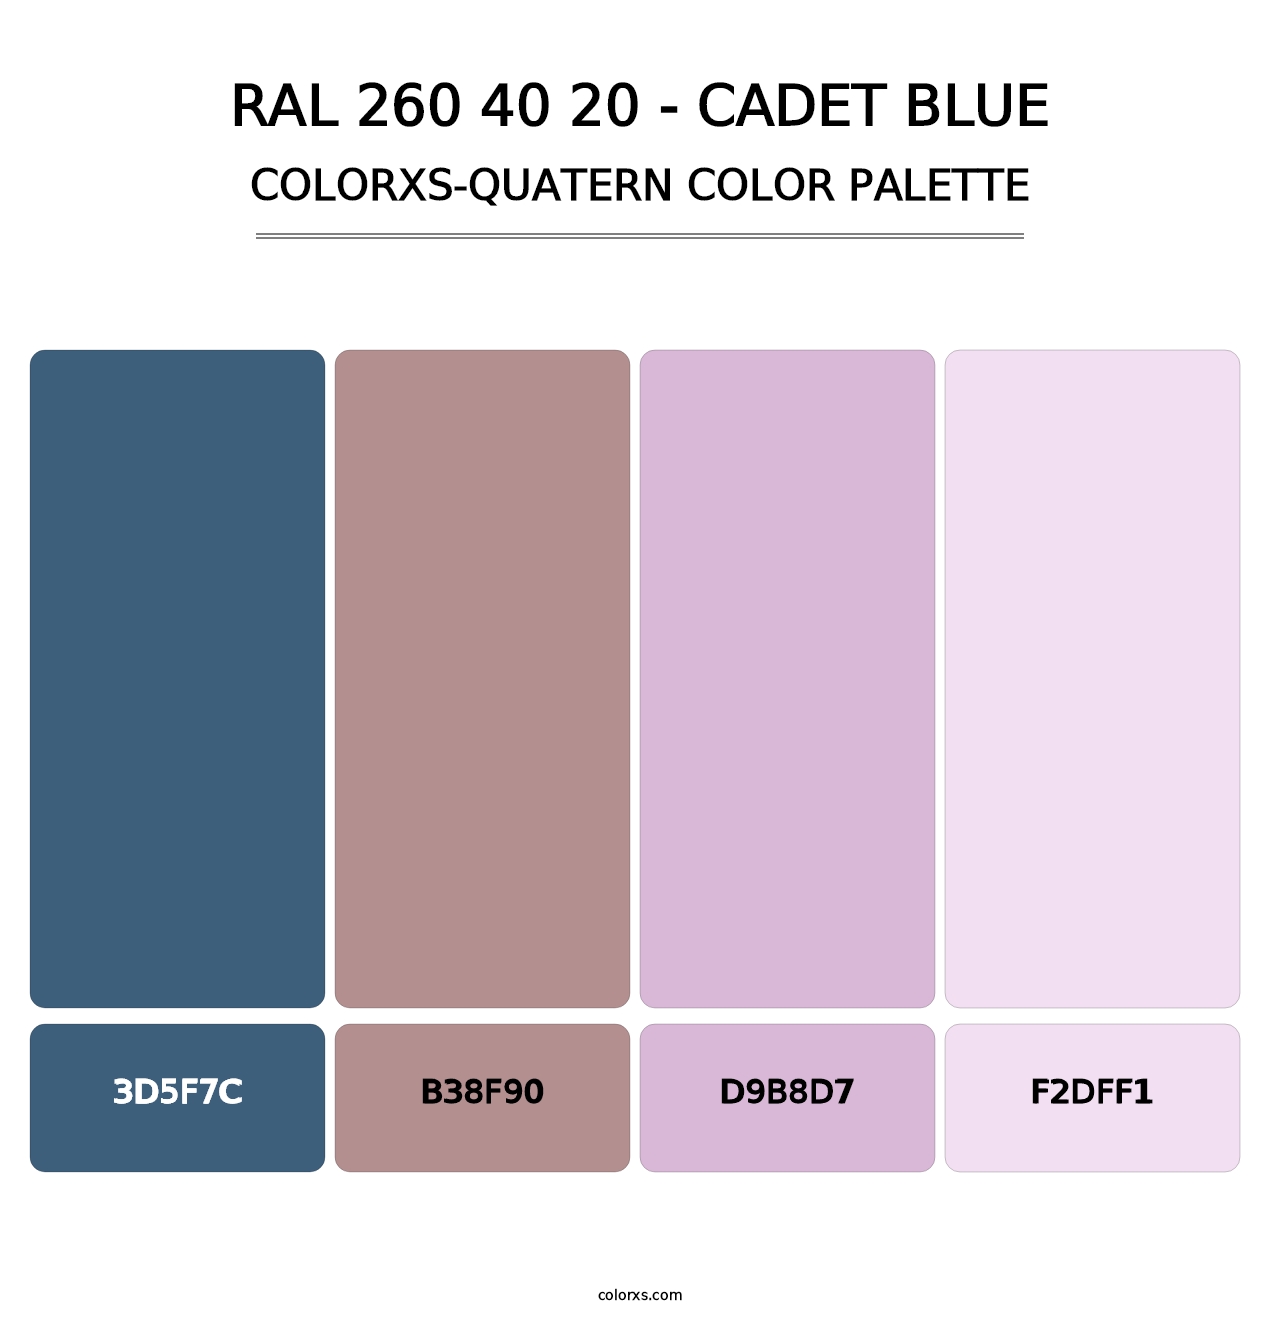 RAL 260 40 20 - Cadet Blue - Colorxs Quatern Palette